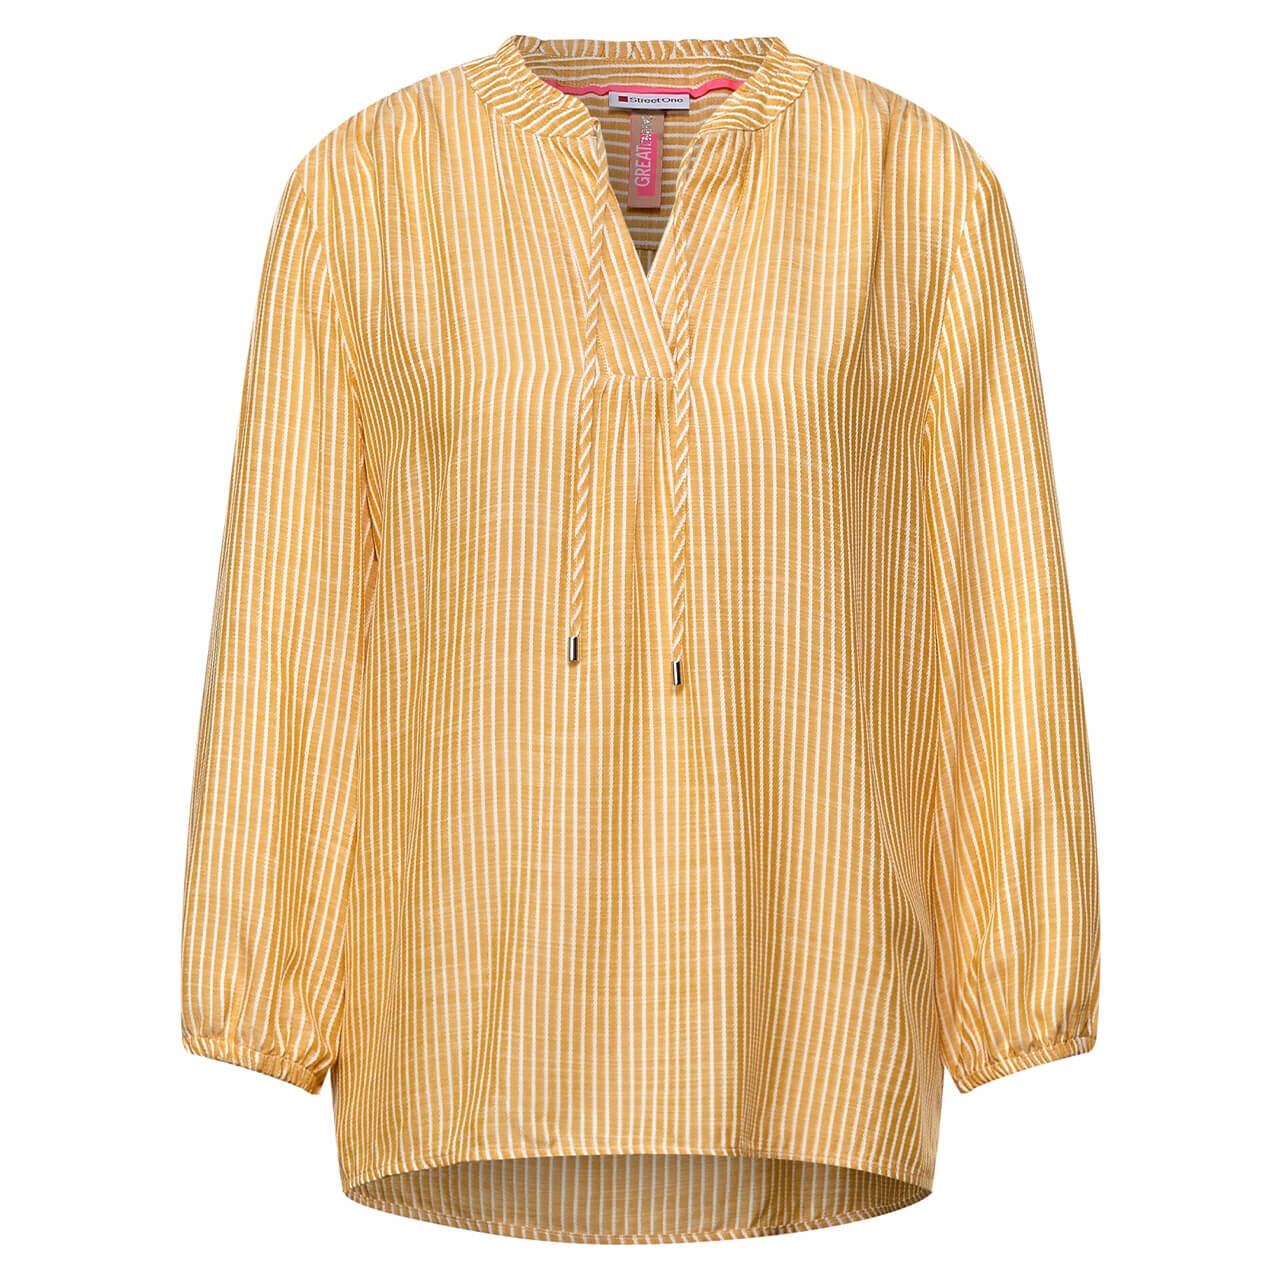 Street One Striped Tunic 3/4 Arm Bluse für Damen in Gelb gestreift, FarbNr.: 23666